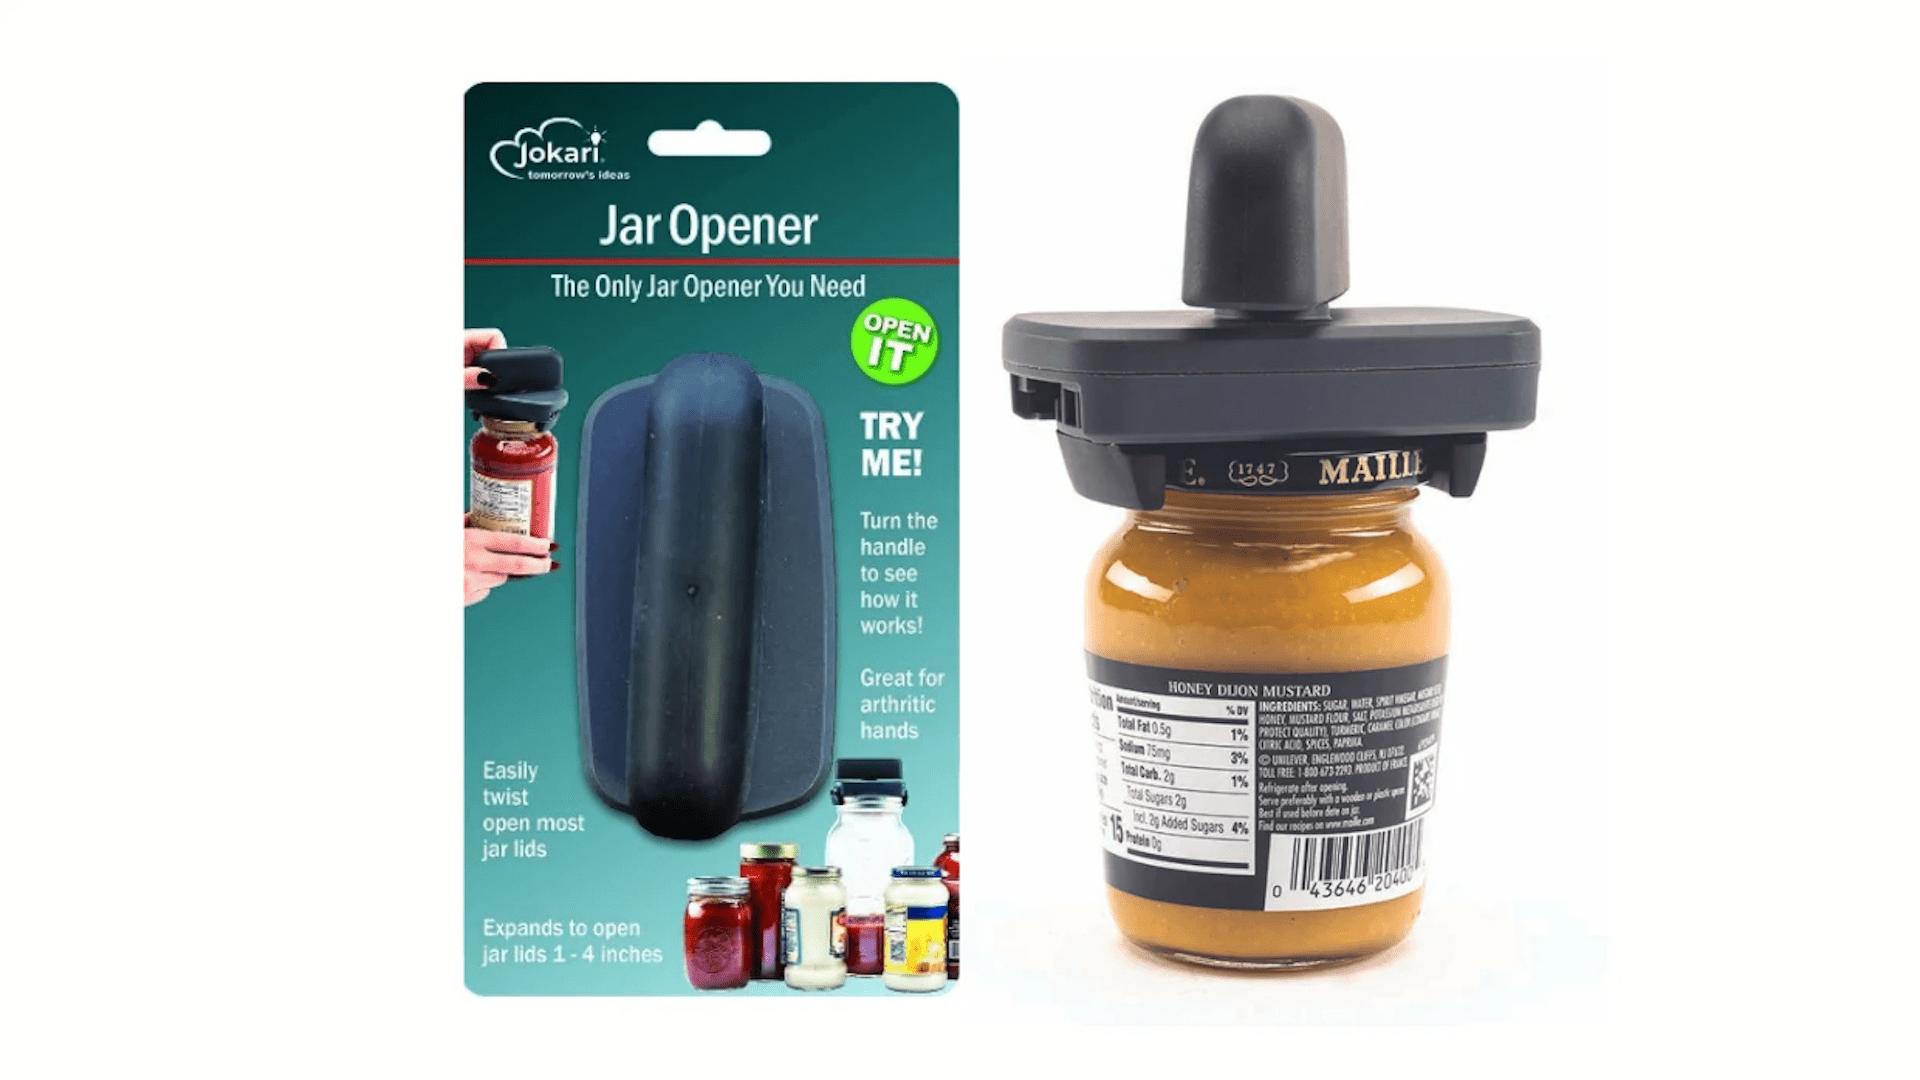 Jokari's Jar Opener